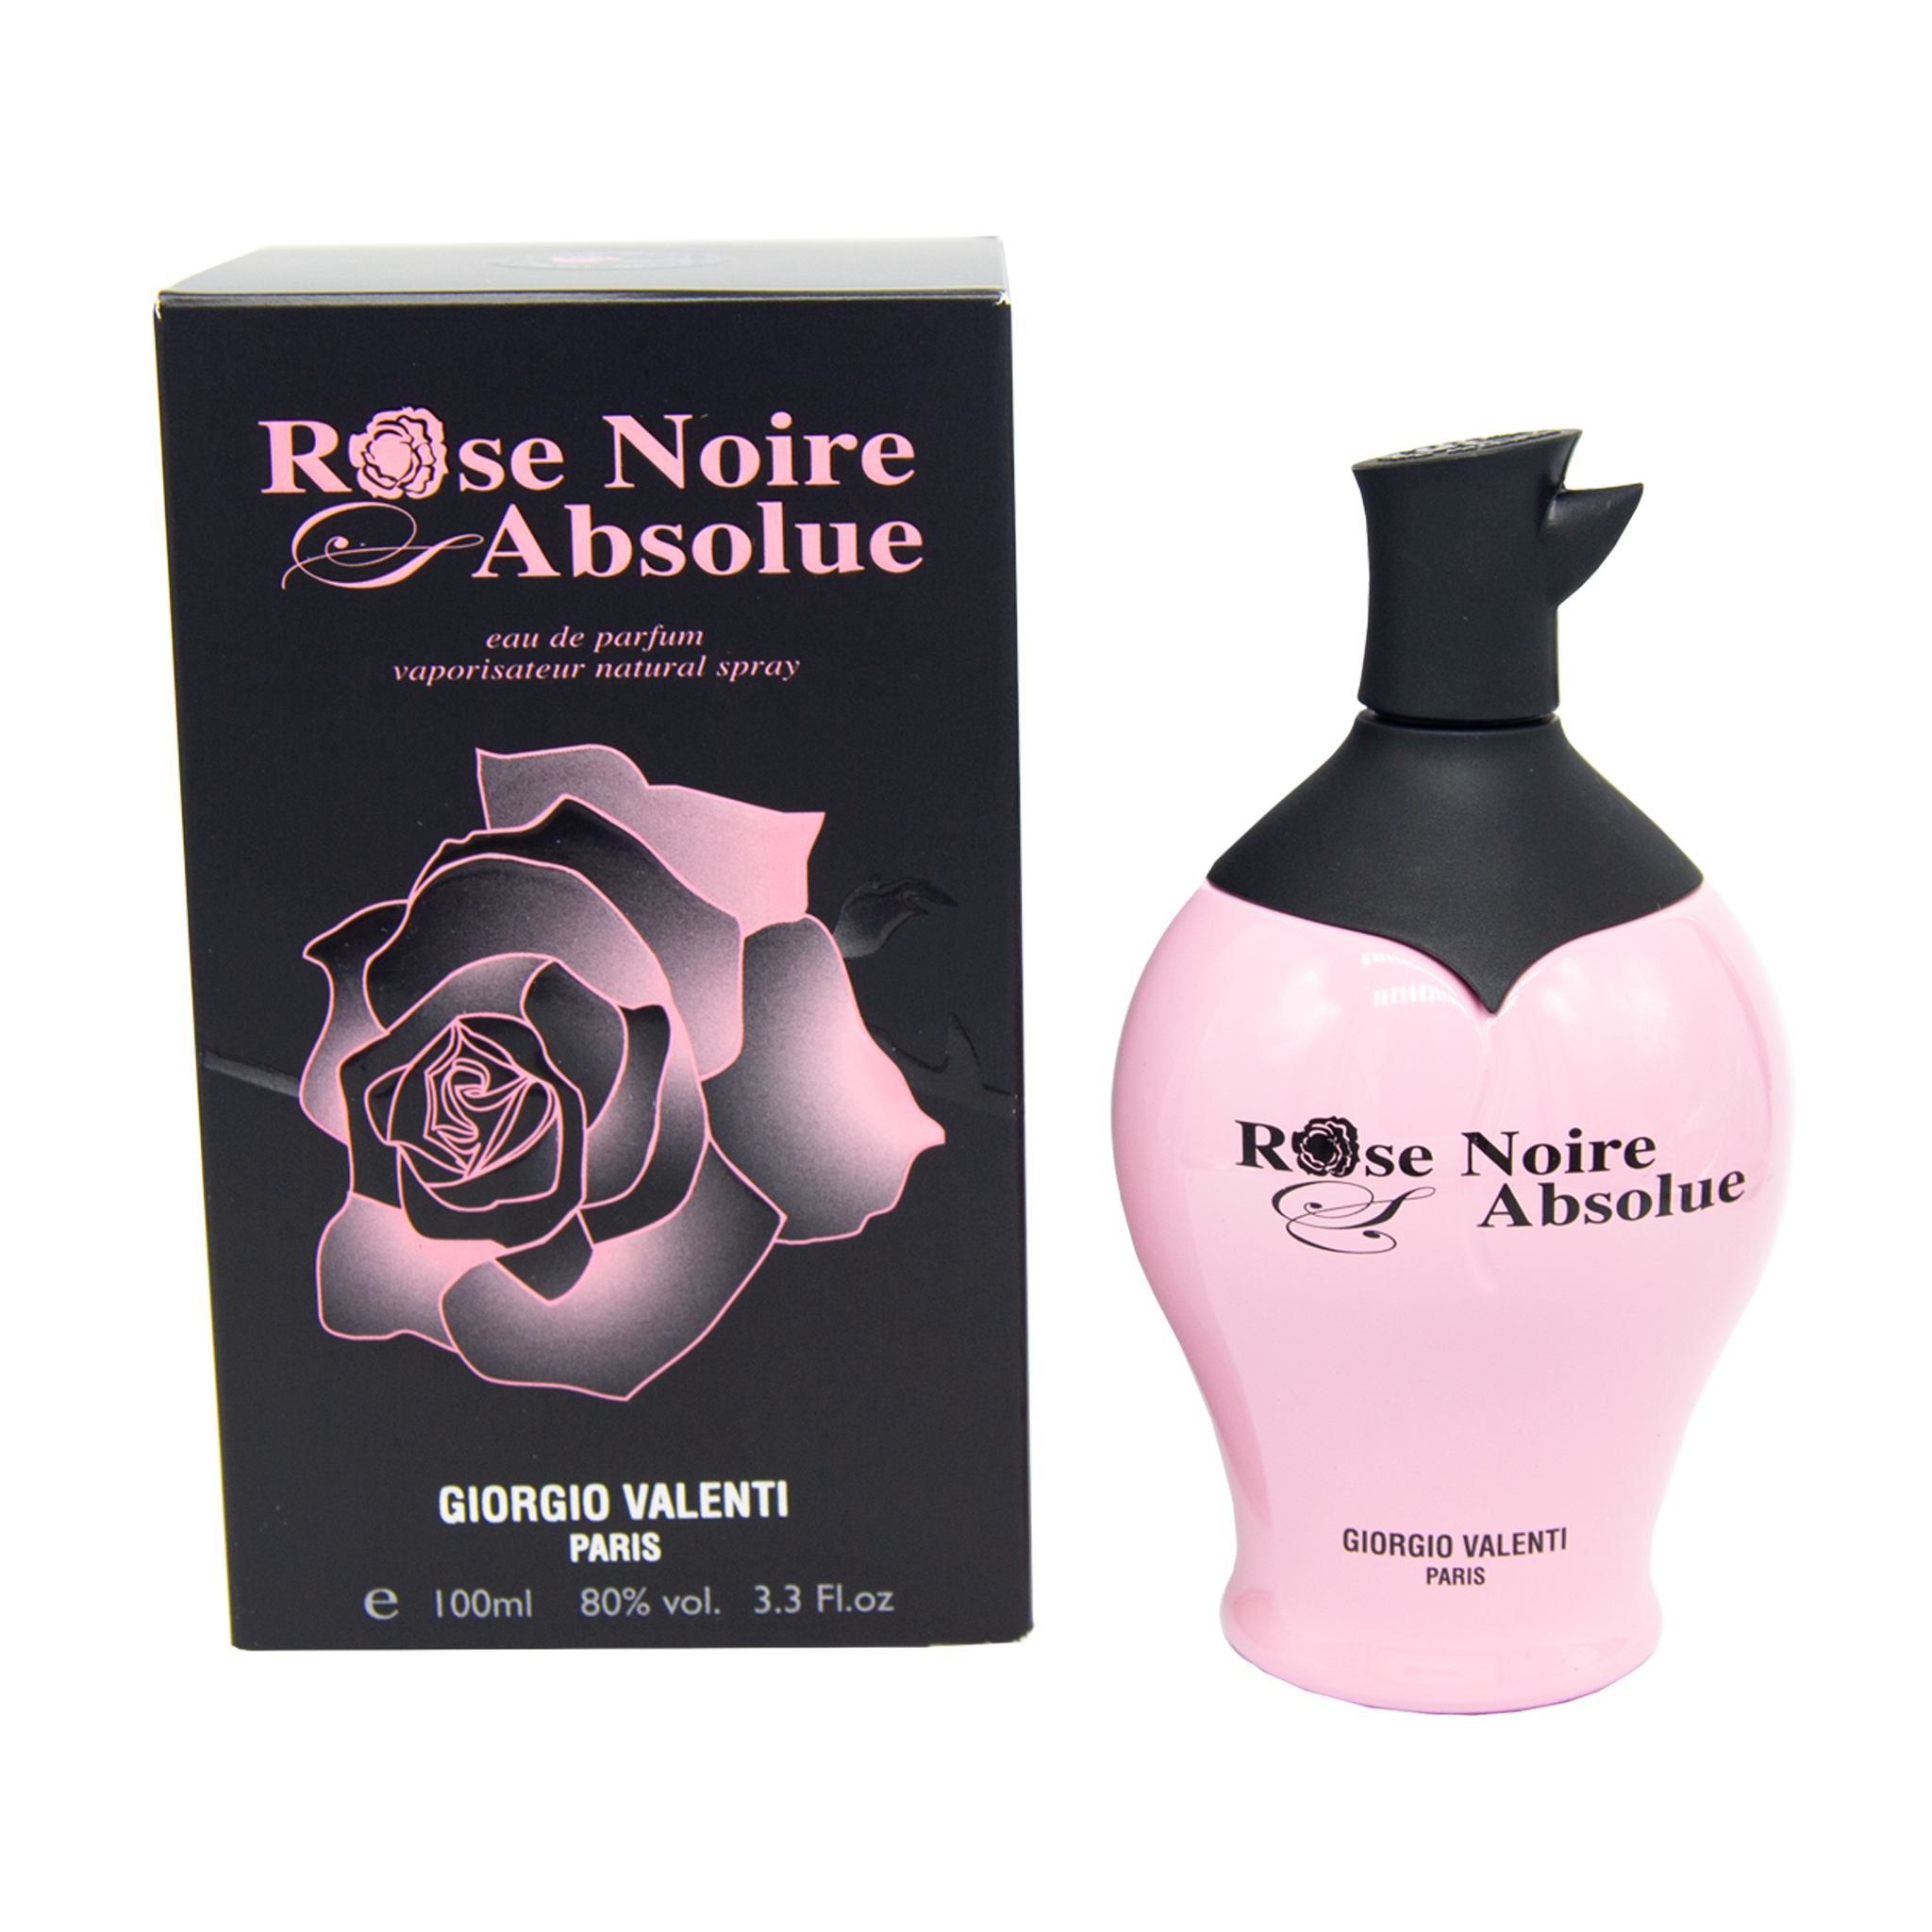 Mondaine Blooming Rose Eau de Parfum Spray for Women